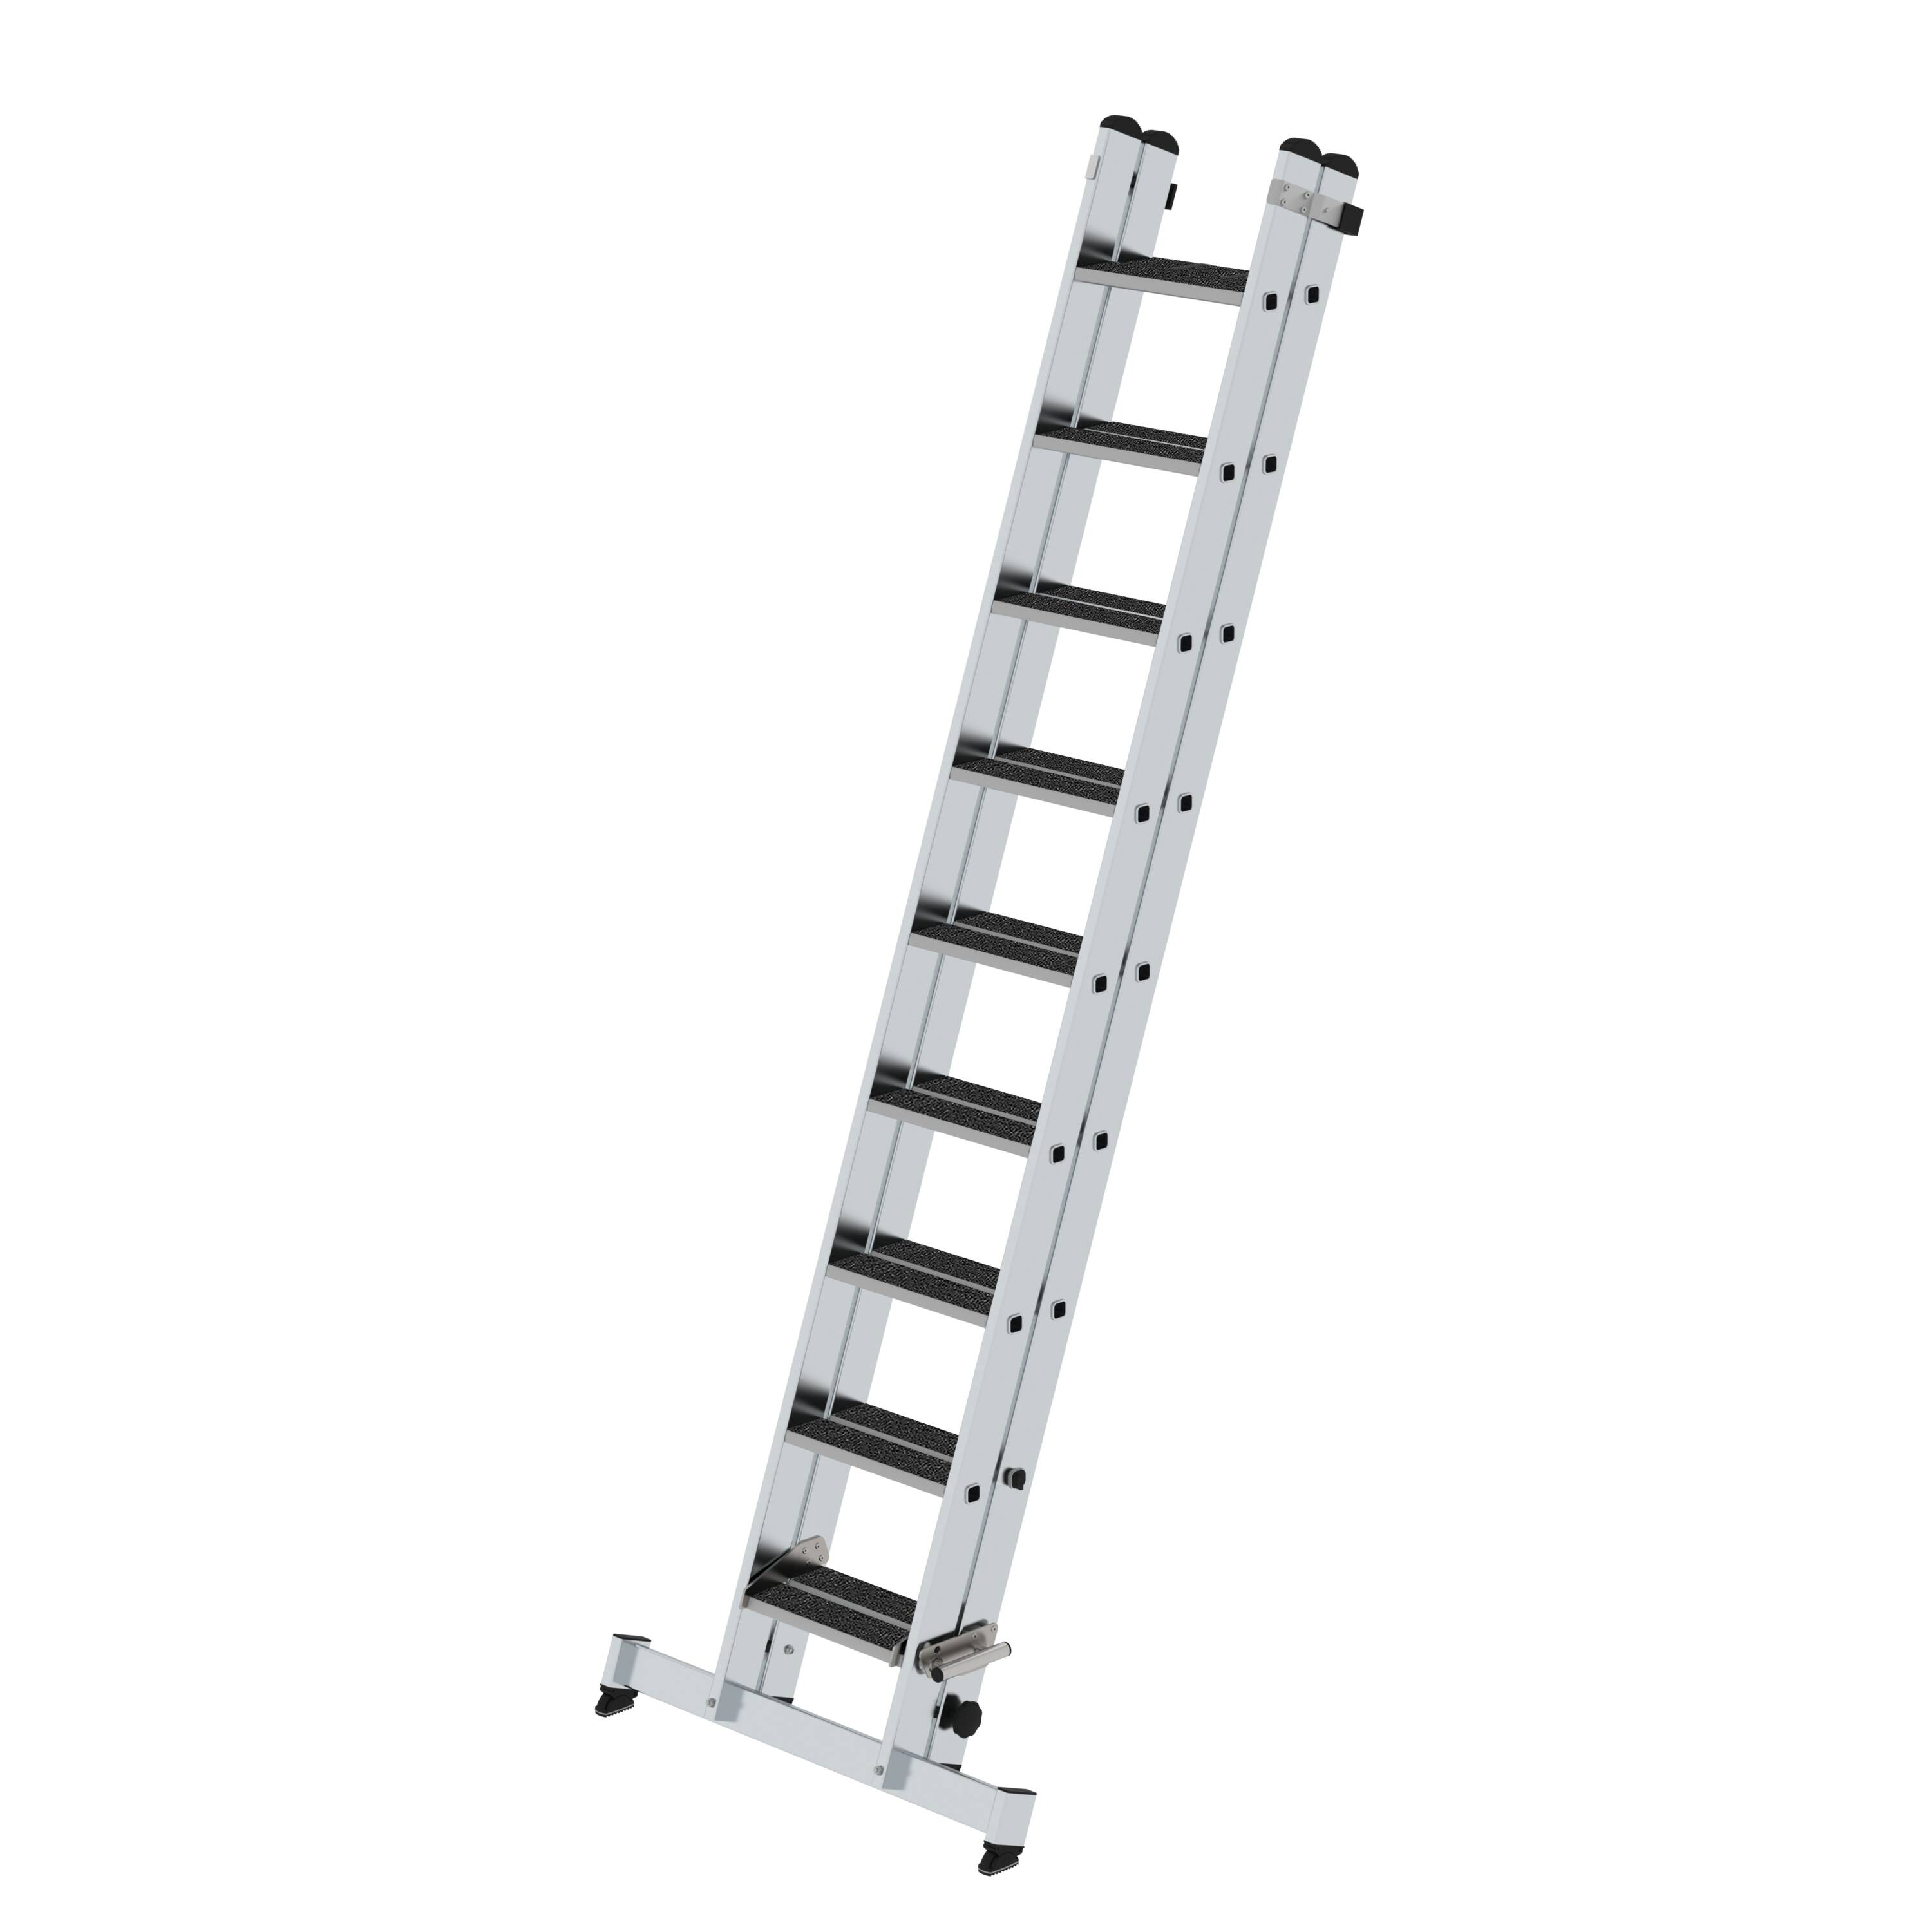 MUNZ Stufen-Schiebeleiter 2-teilig mit nivello-Traverse und clip-step R13  